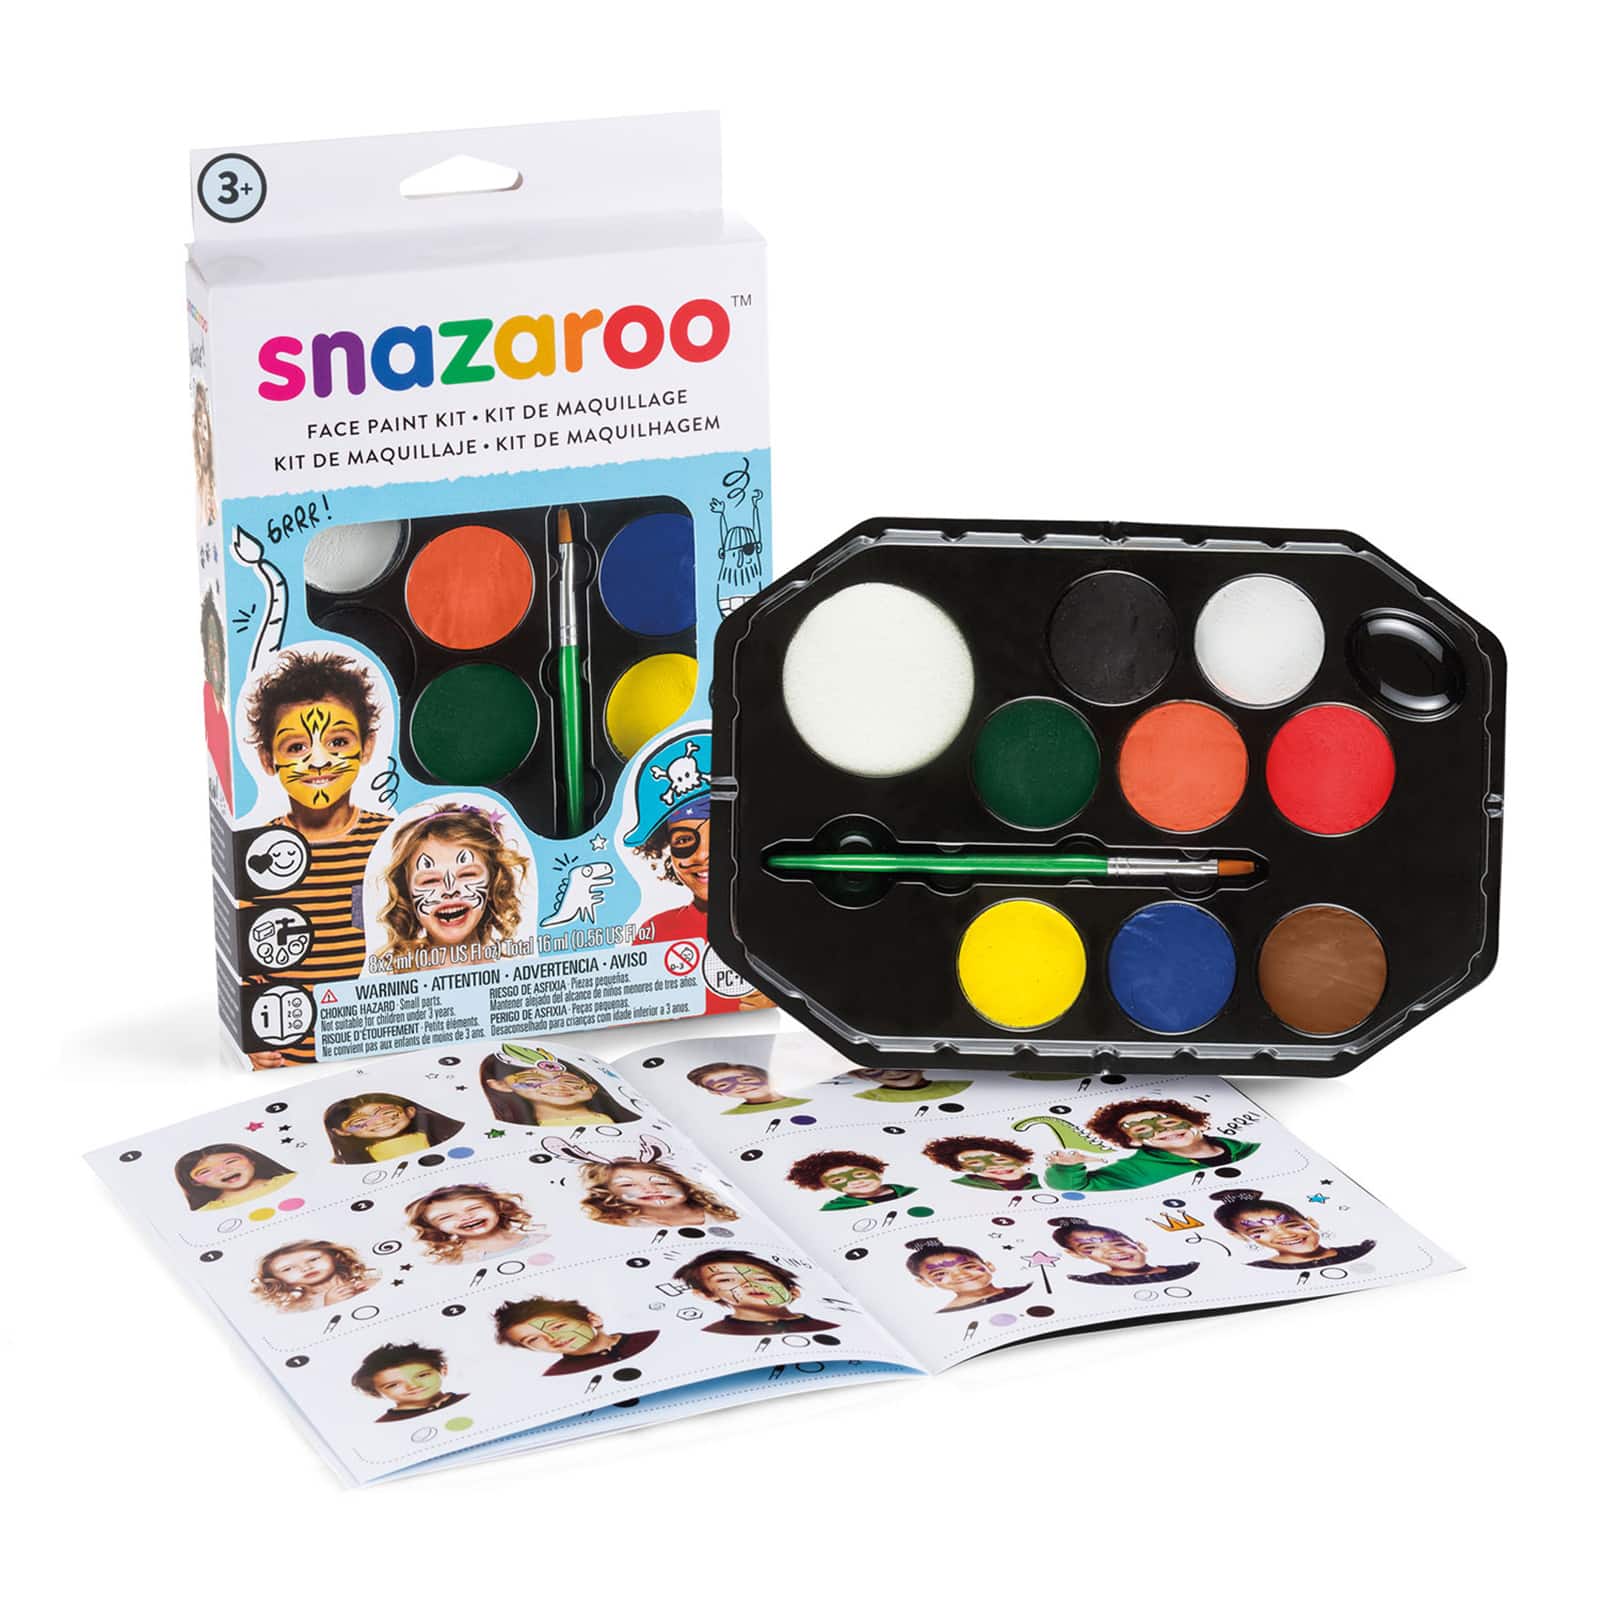 Buy Snazaroo® Face Paint Kit at S&S Worldwide